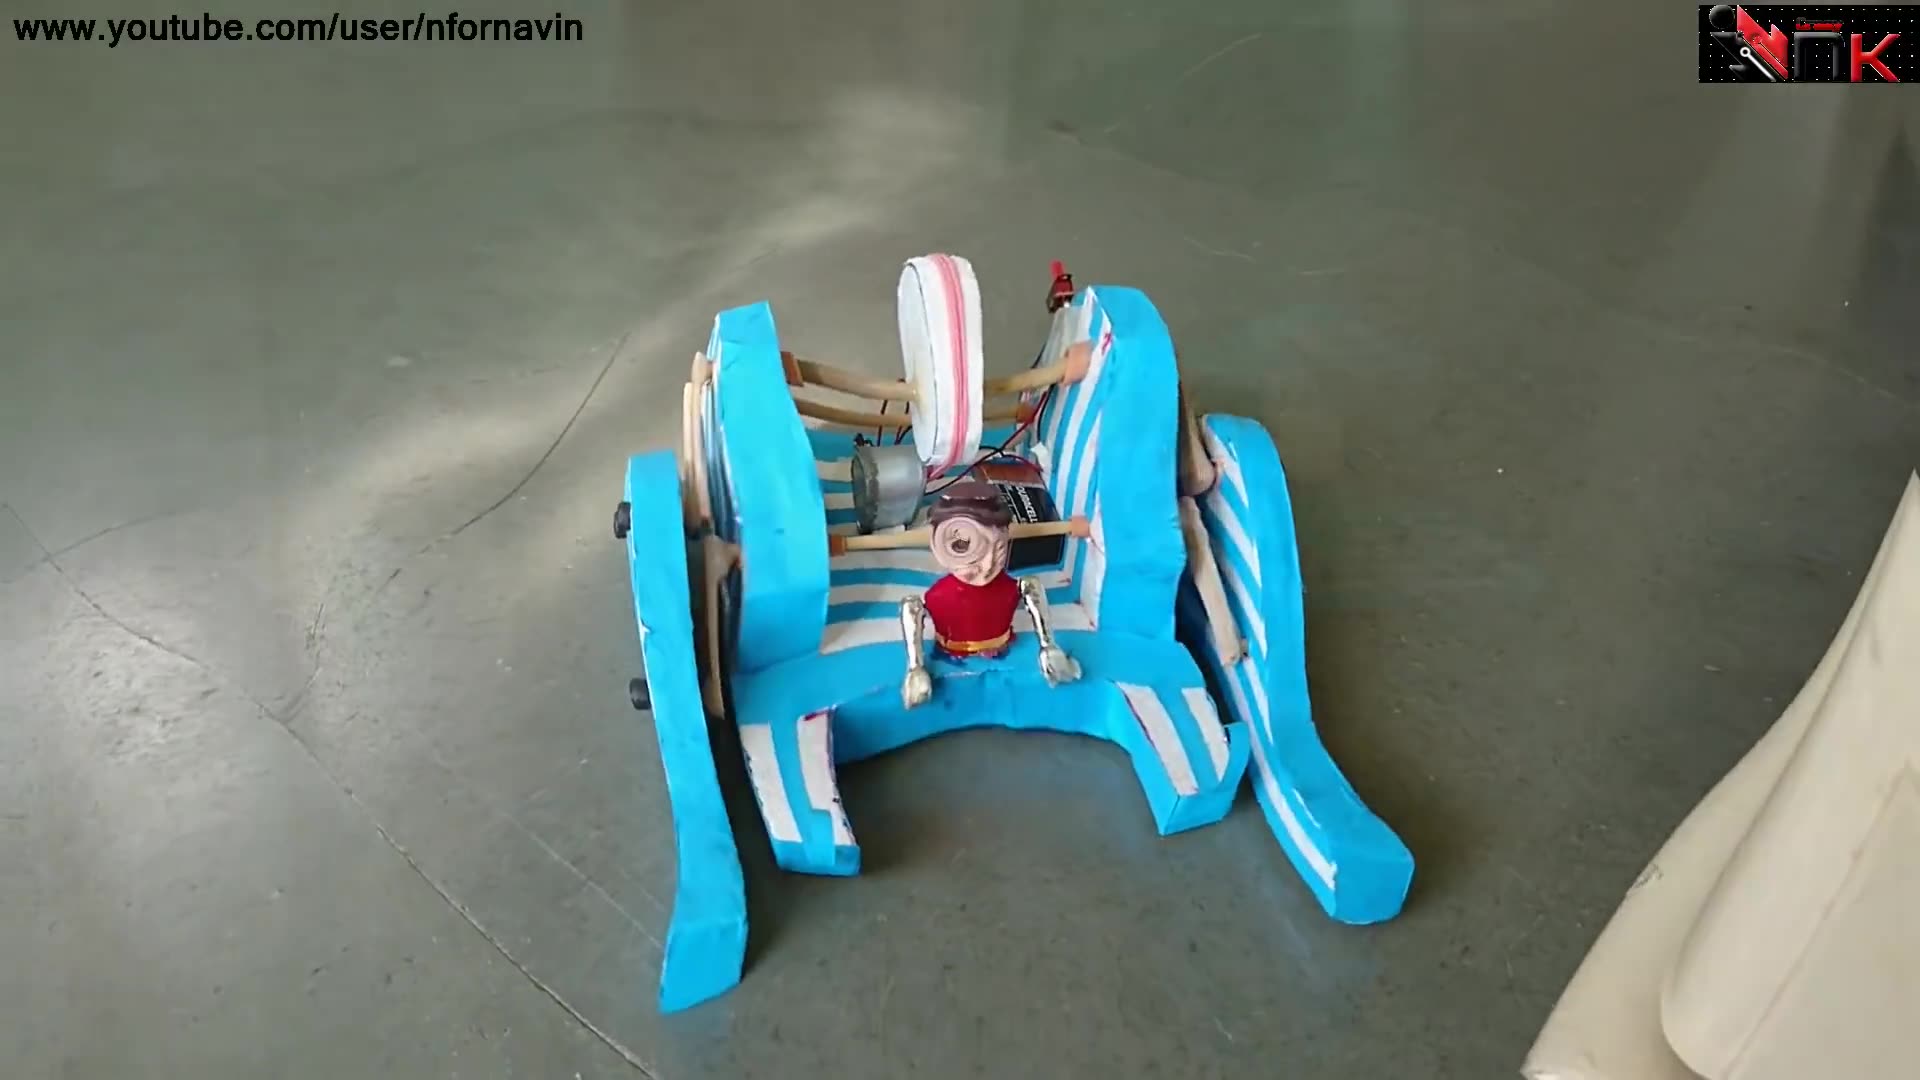 ساخت ربات با وسایل دور ریختنی